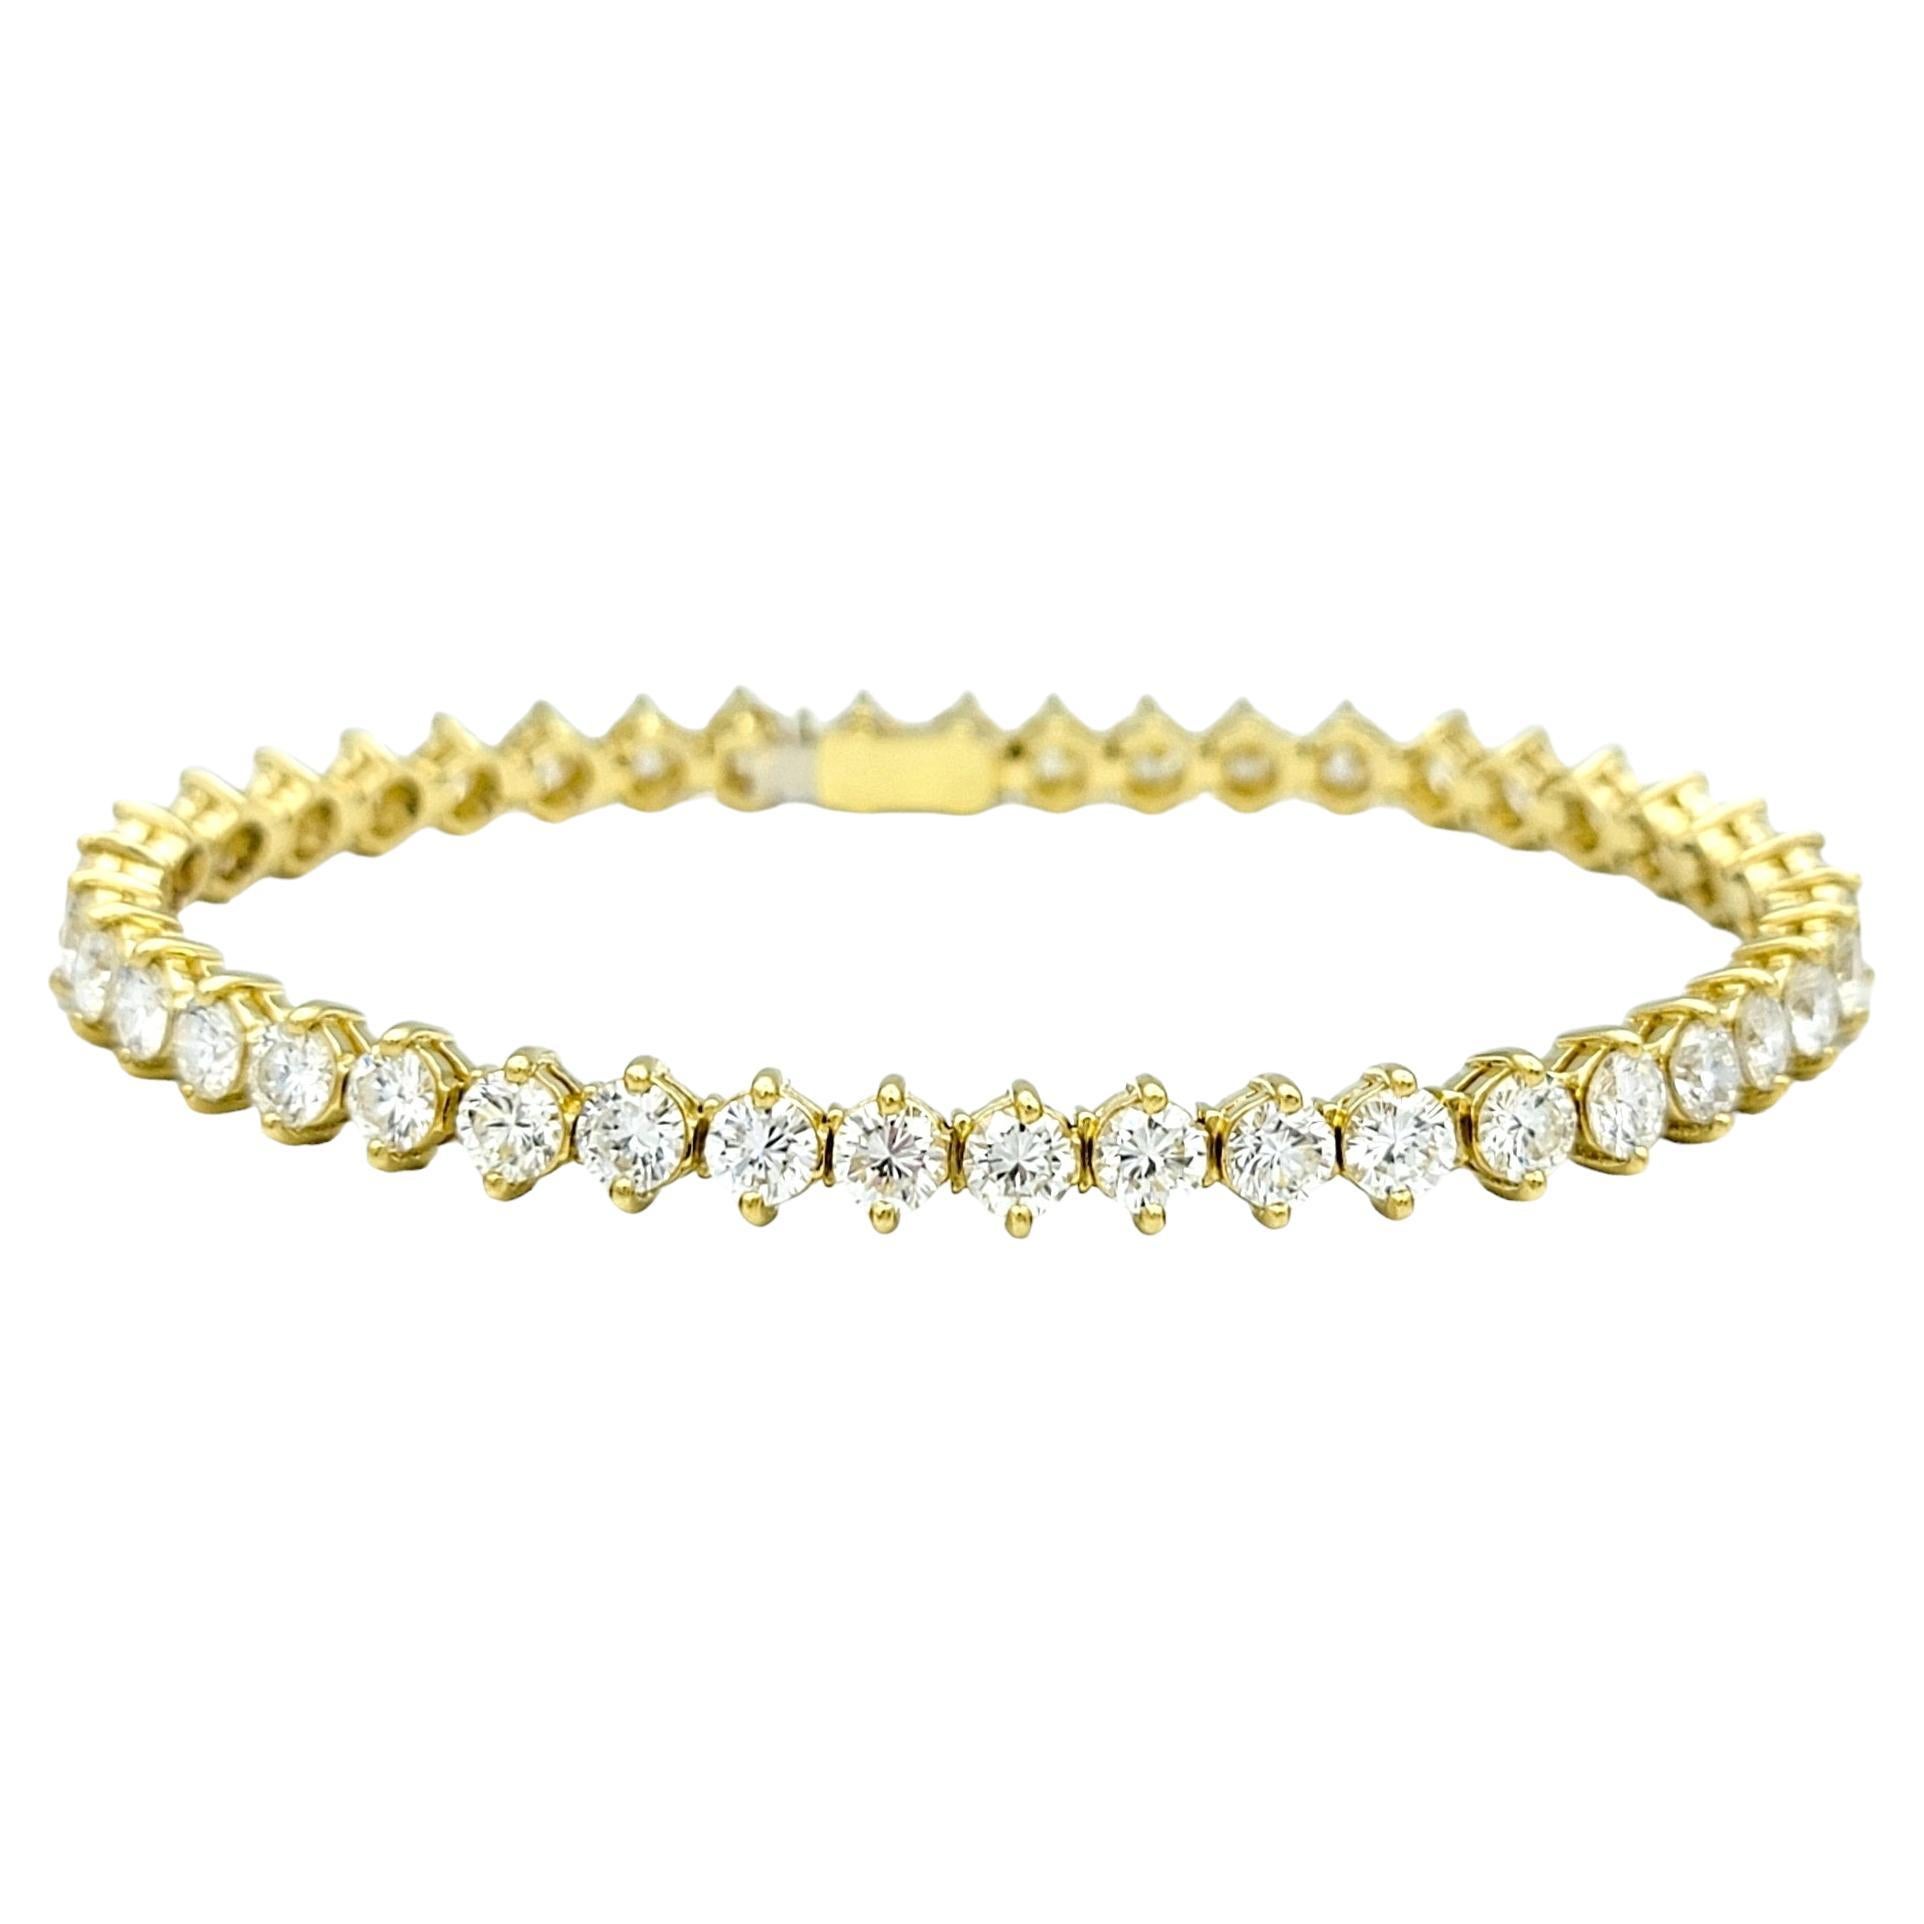 7.66 Carat Total Round Diamond Tennis Bracelet Set in 18 Karat Yellow Gold